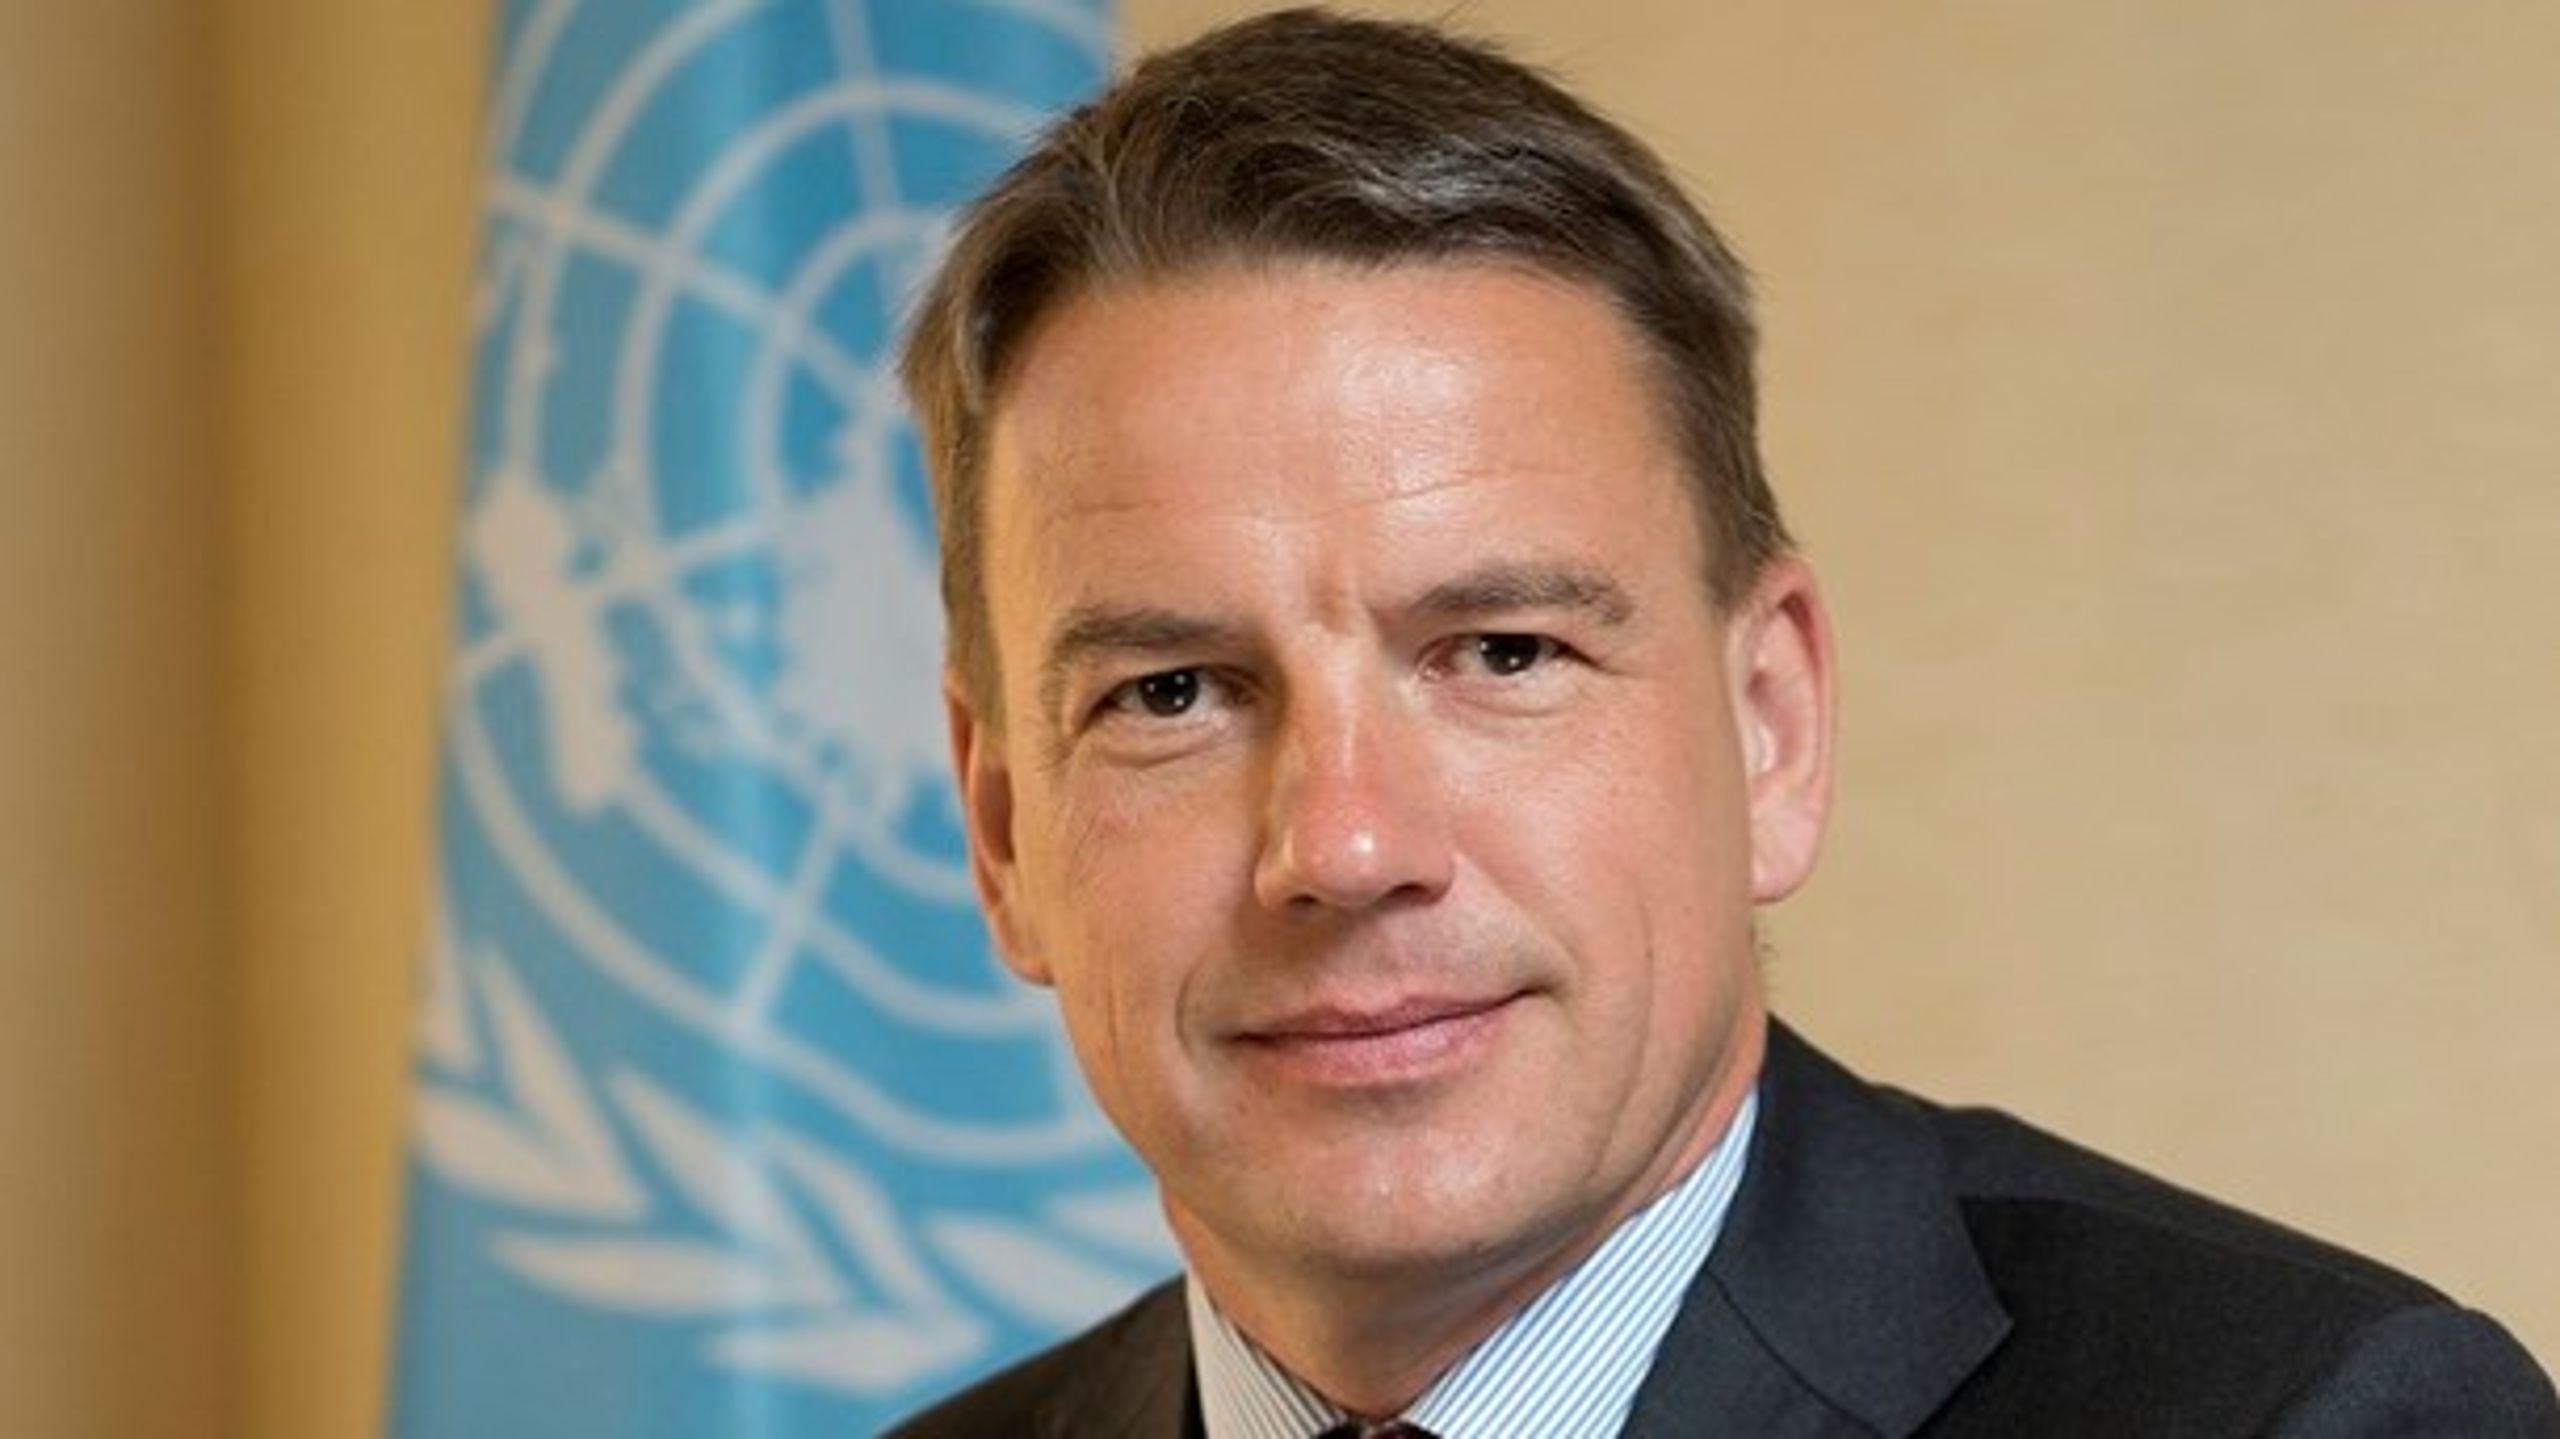 Den tidligere udviklingsminister Christian Friis Bach overtager stillingen som generalsekretær i Dansk Flygtningehjælp.